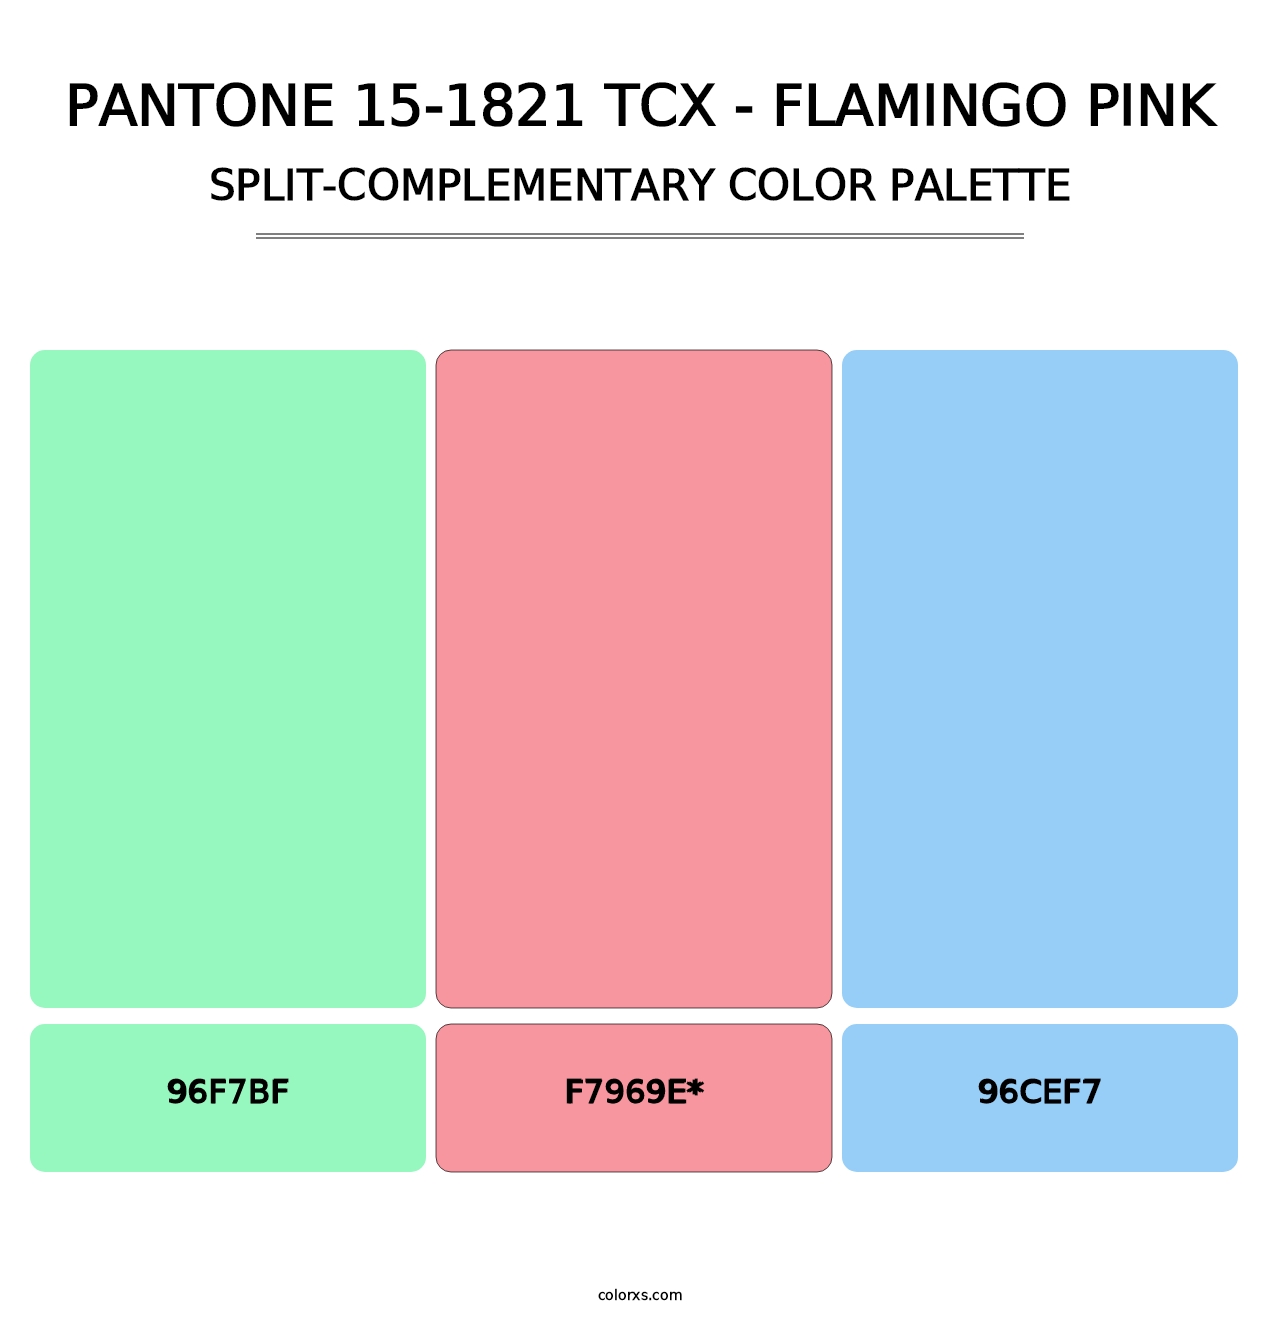 PANTONE 15-1821 TCX - Flamingo Pink - Split-Complementary Color Palette